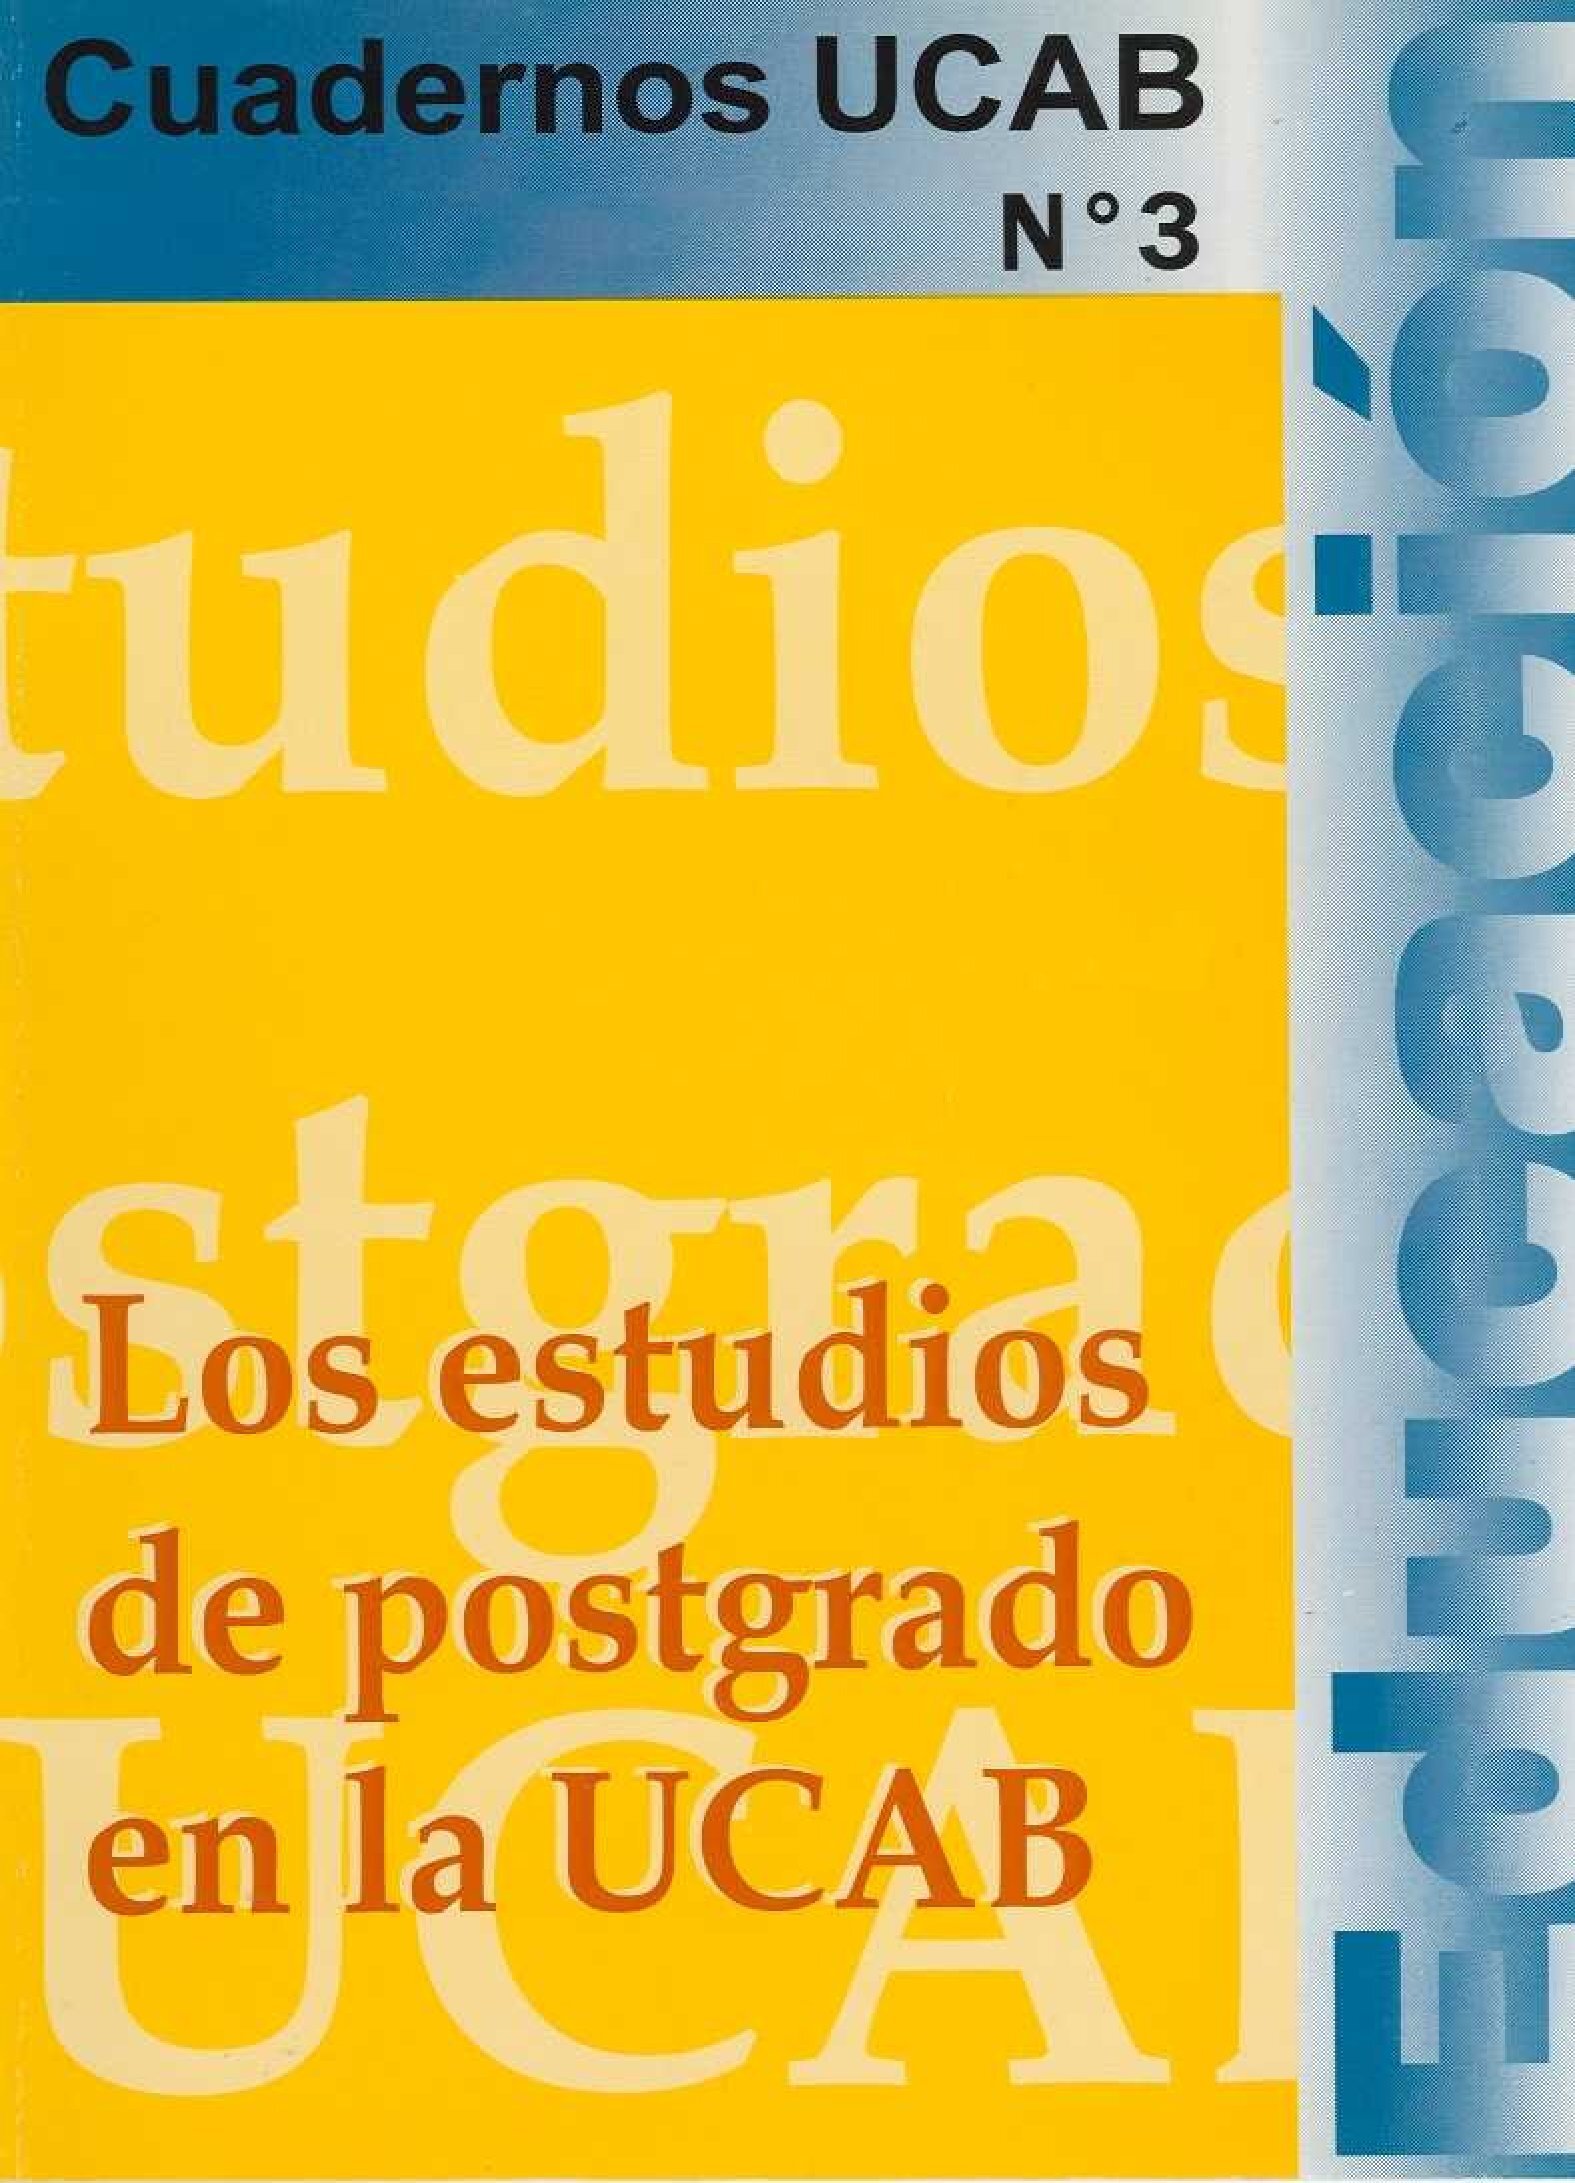                     Ver Núm. 3 (2000): LOS ESTUDIOS DE POSTGRADO EN LA UCAB
                